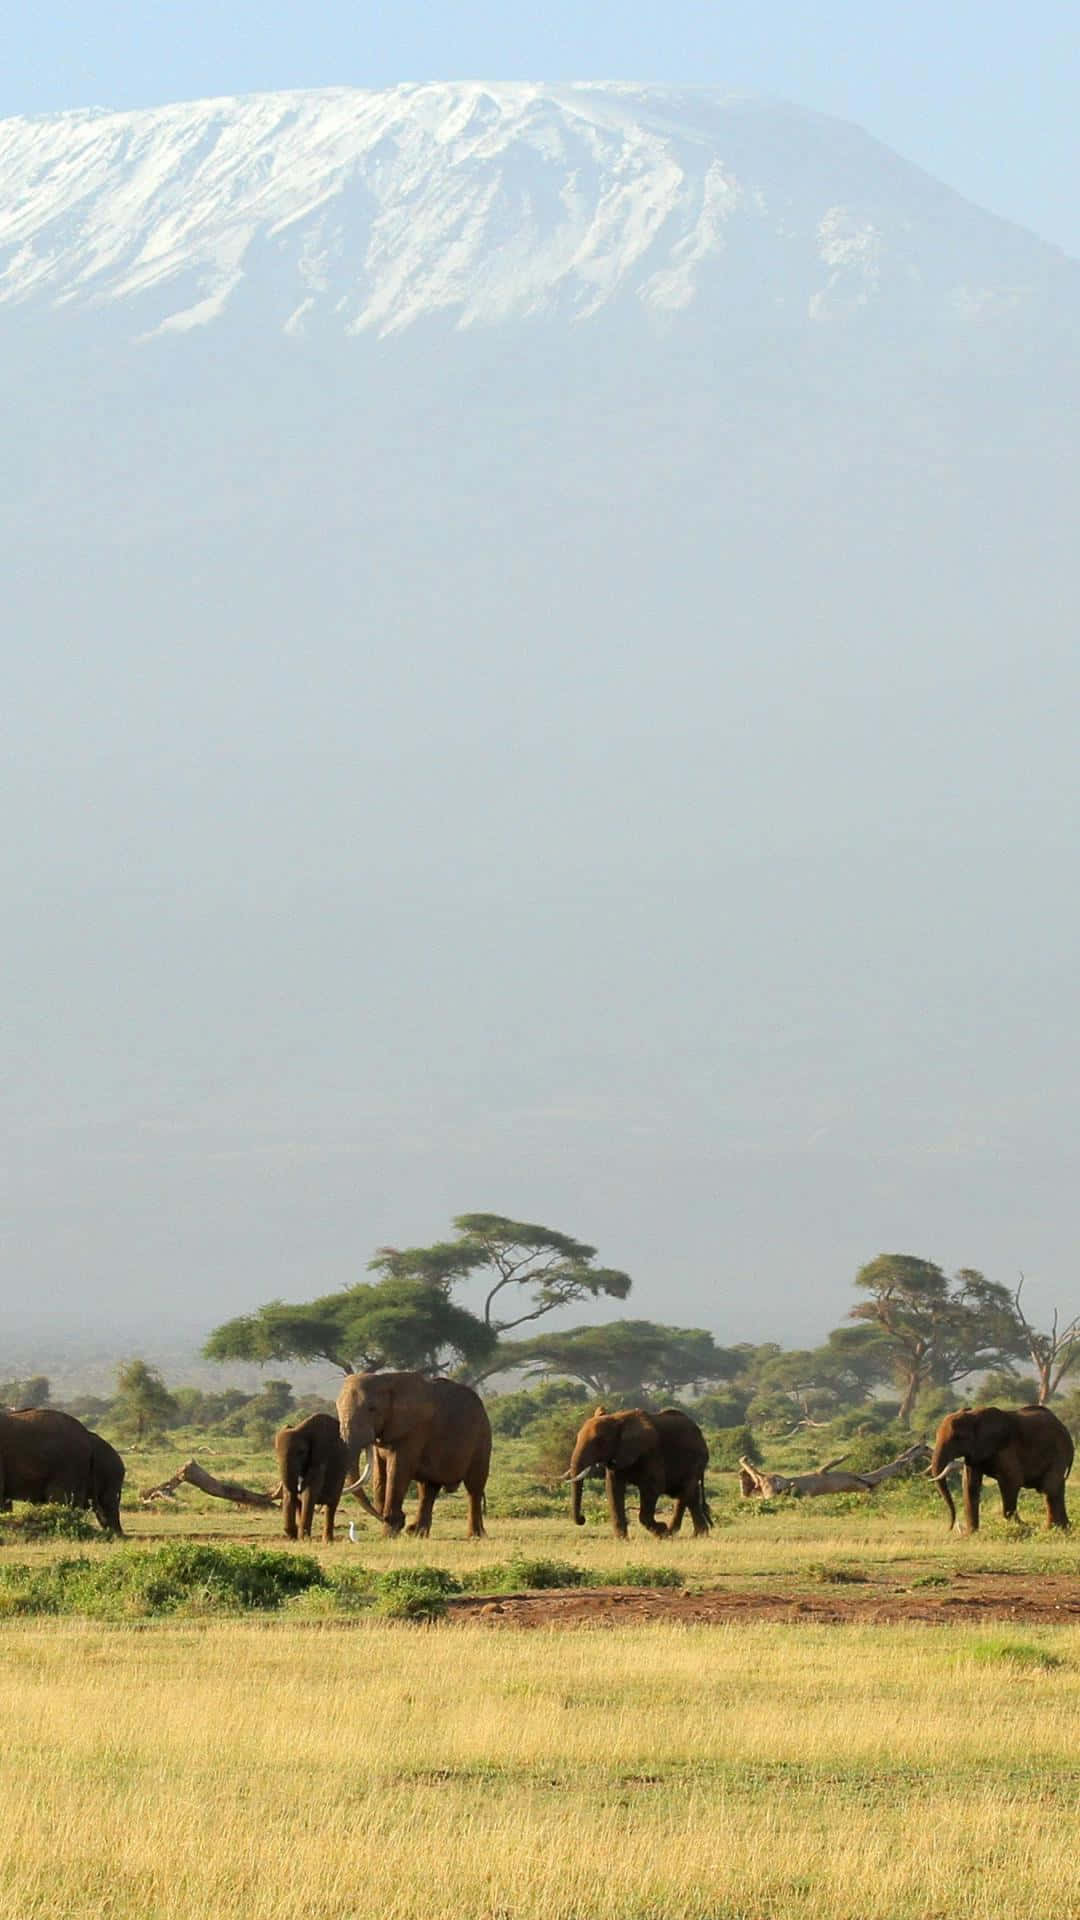 Majestic Wildlife at the Peak of Mount Kilimanjaro Wallpaper